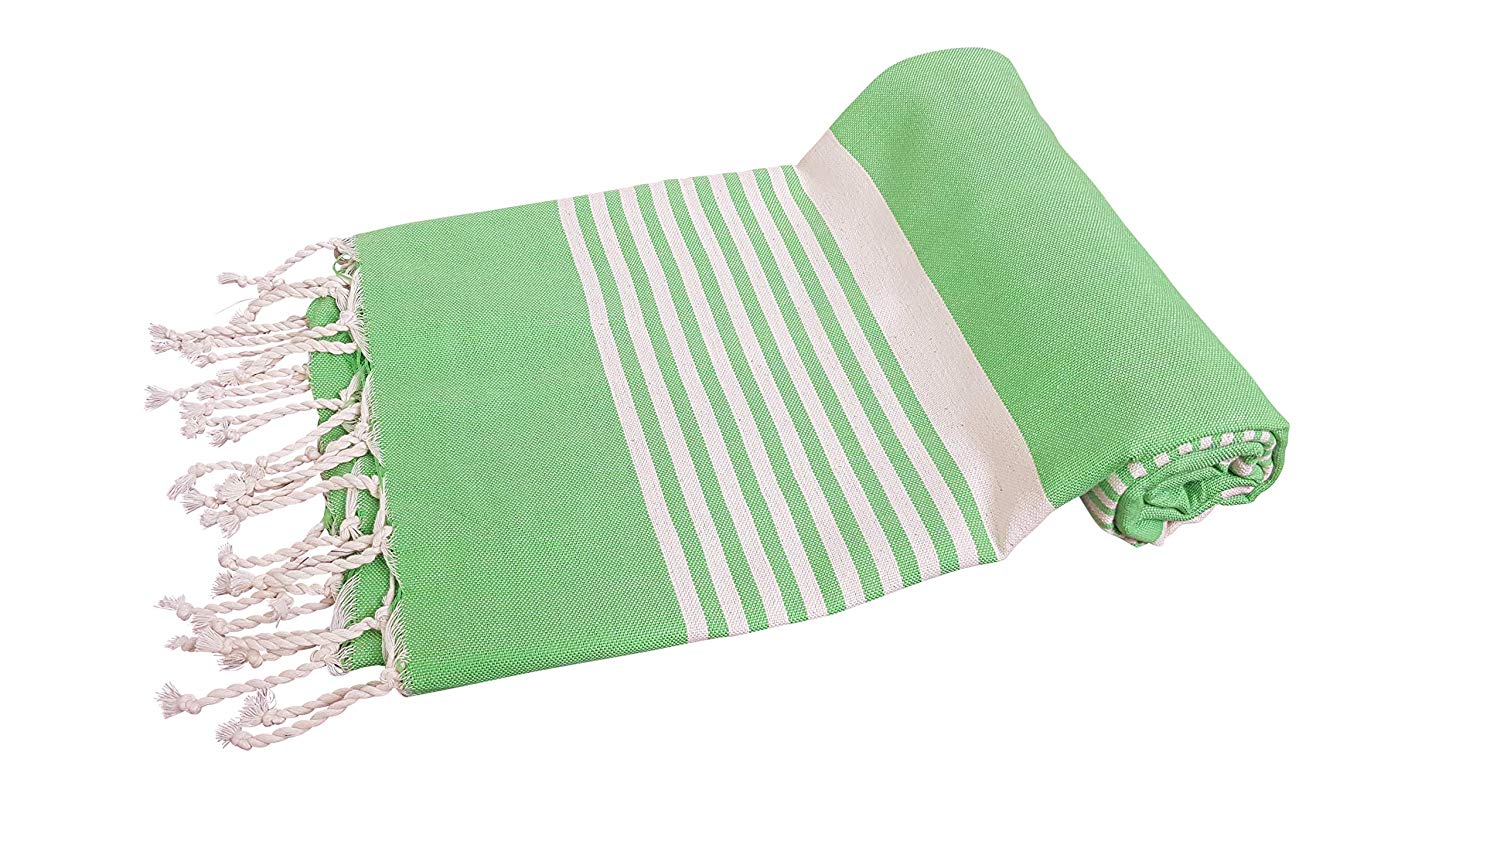 Premium Bath Beach Towel (Green Striped)